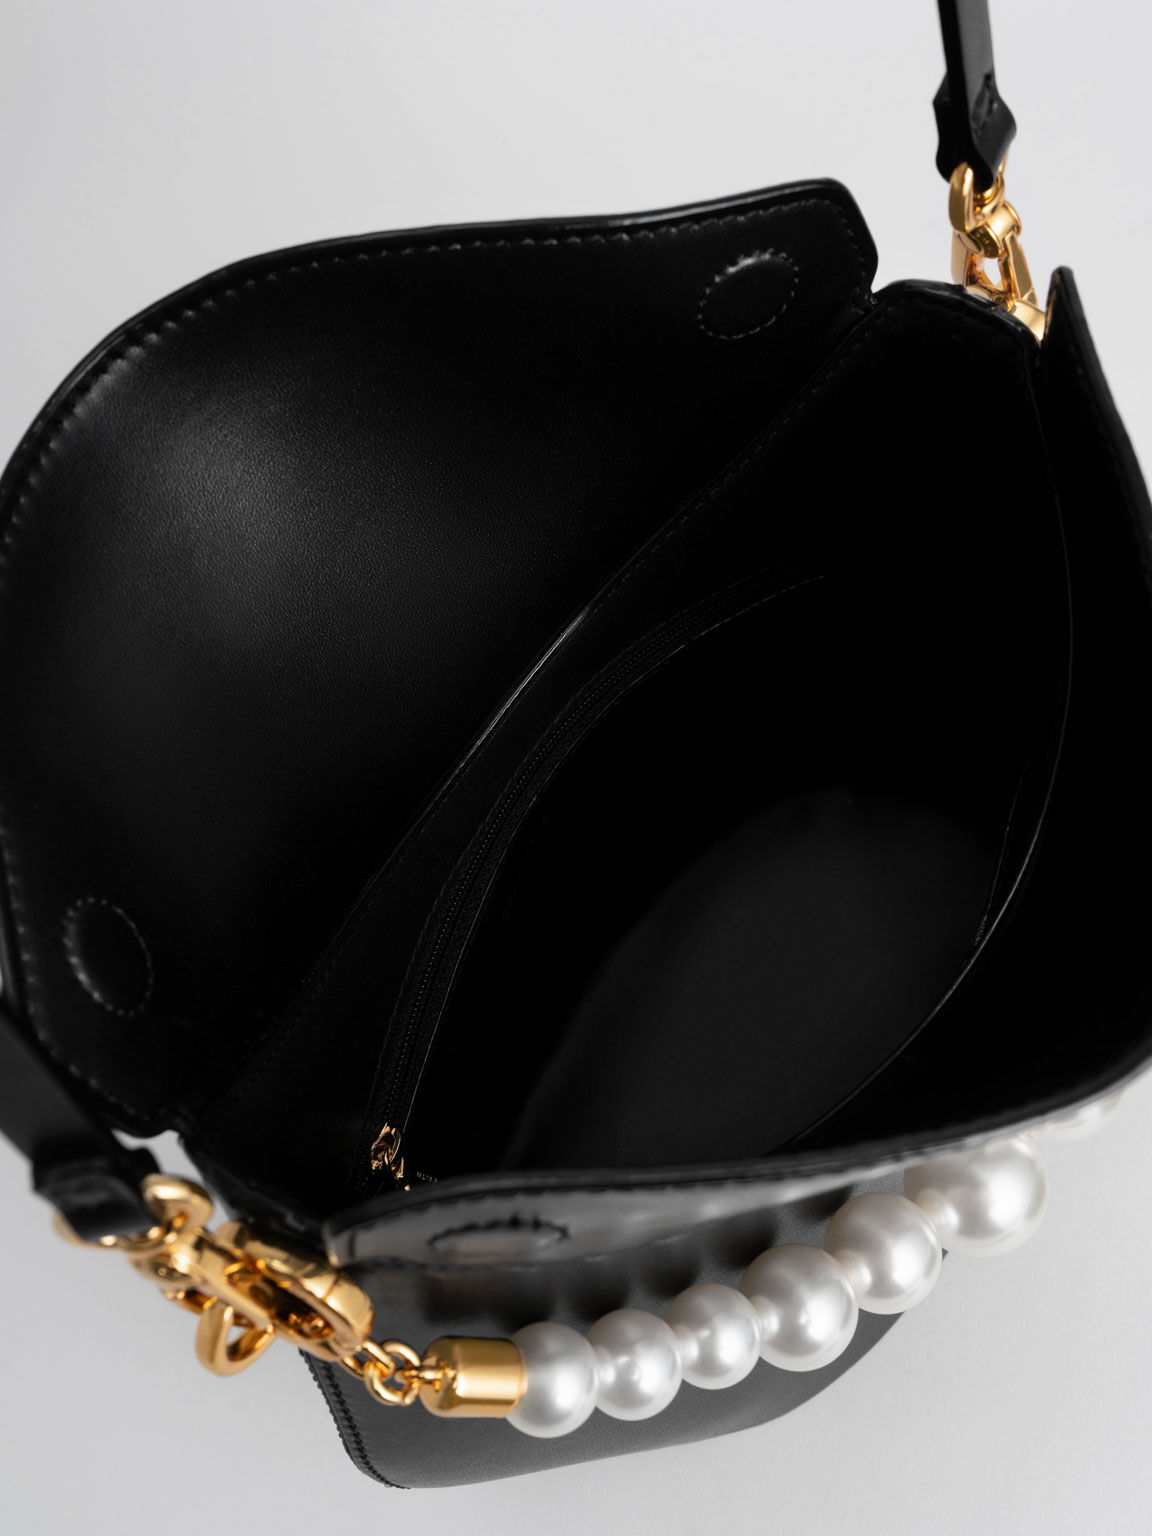 Bead-Embellished Knotted Handle Bag, Black, hi-res